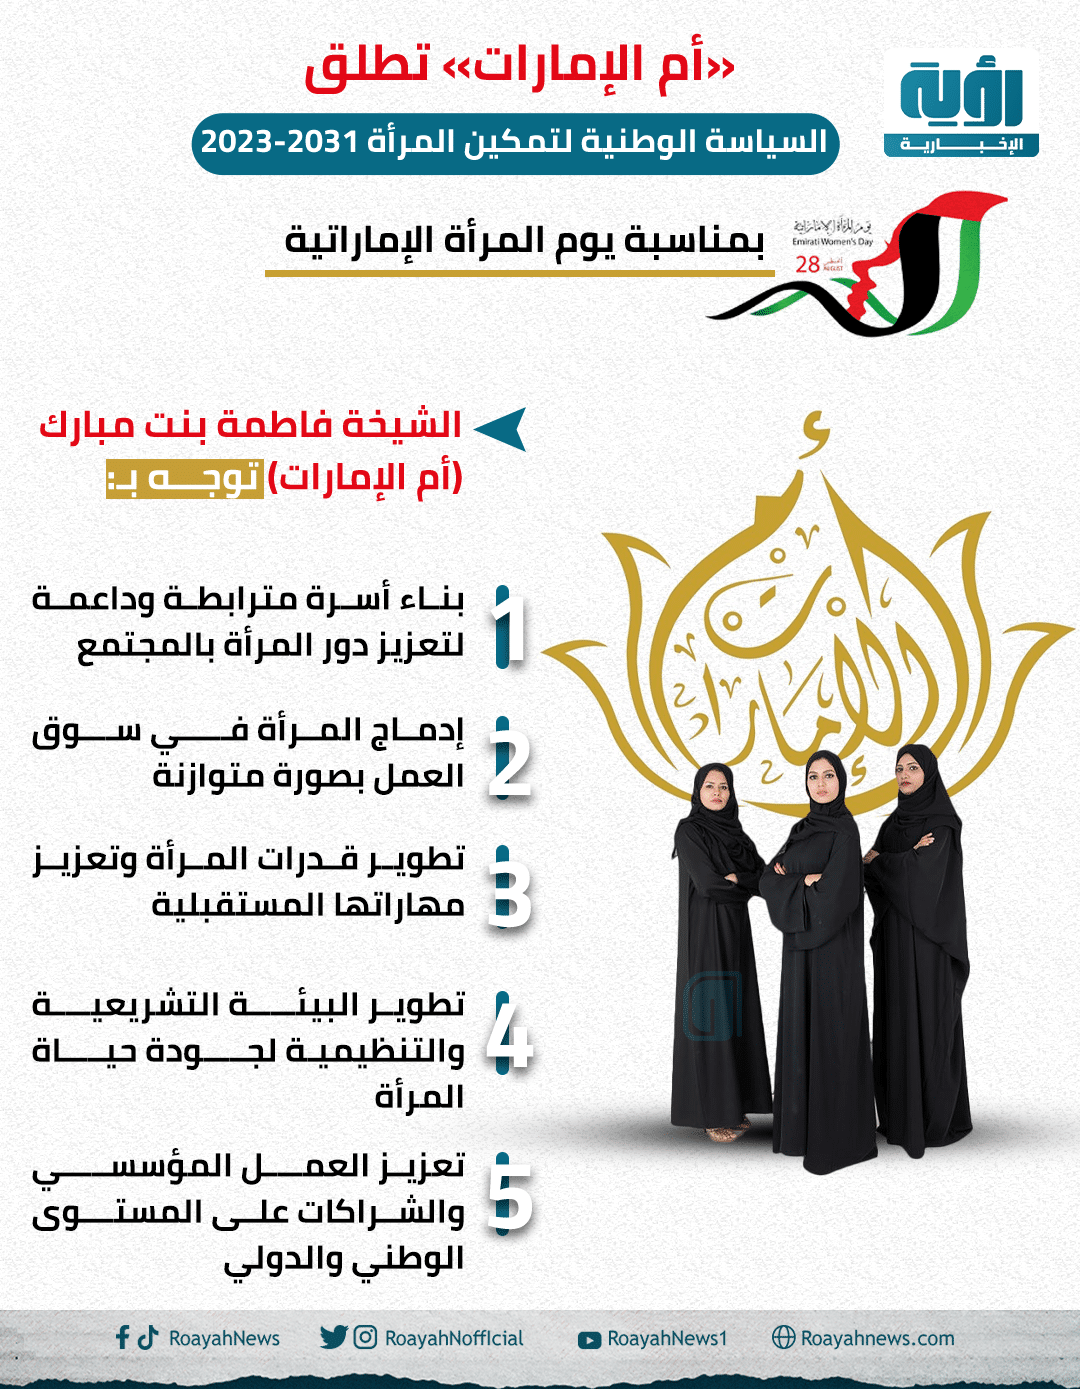 أم الإمارات تطلق السياسة الوطنية لتمكين المرأة 2023 2031